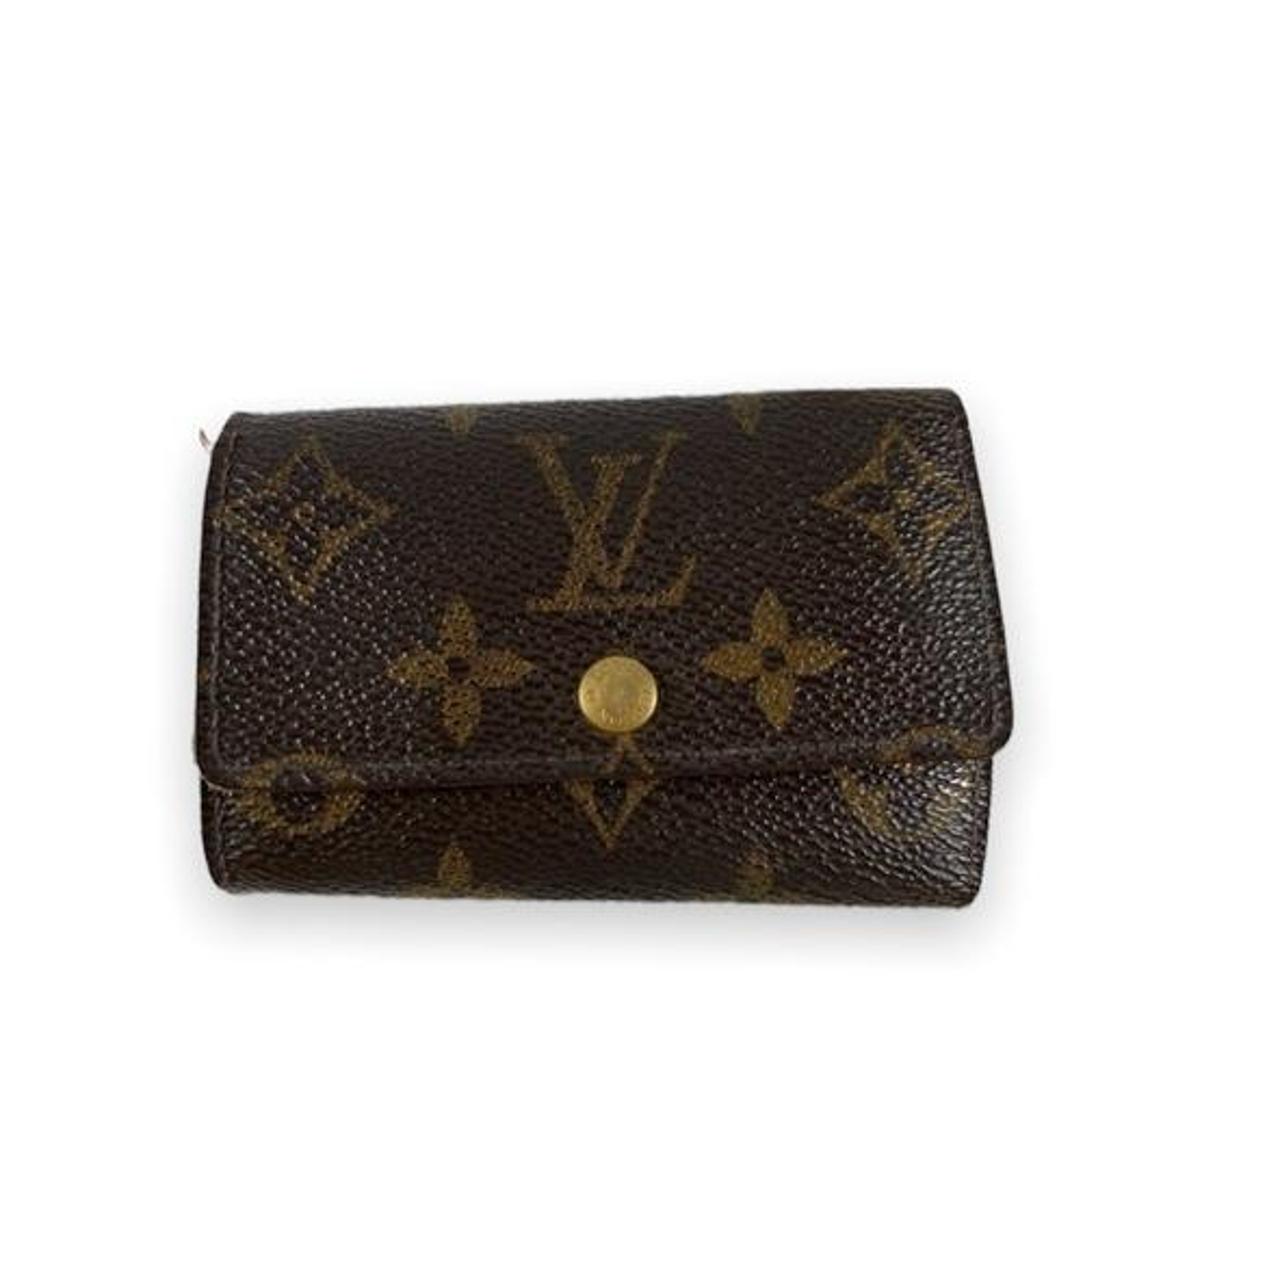 Vintage Louis Vuitton Key Pouch / Wallet - Depop